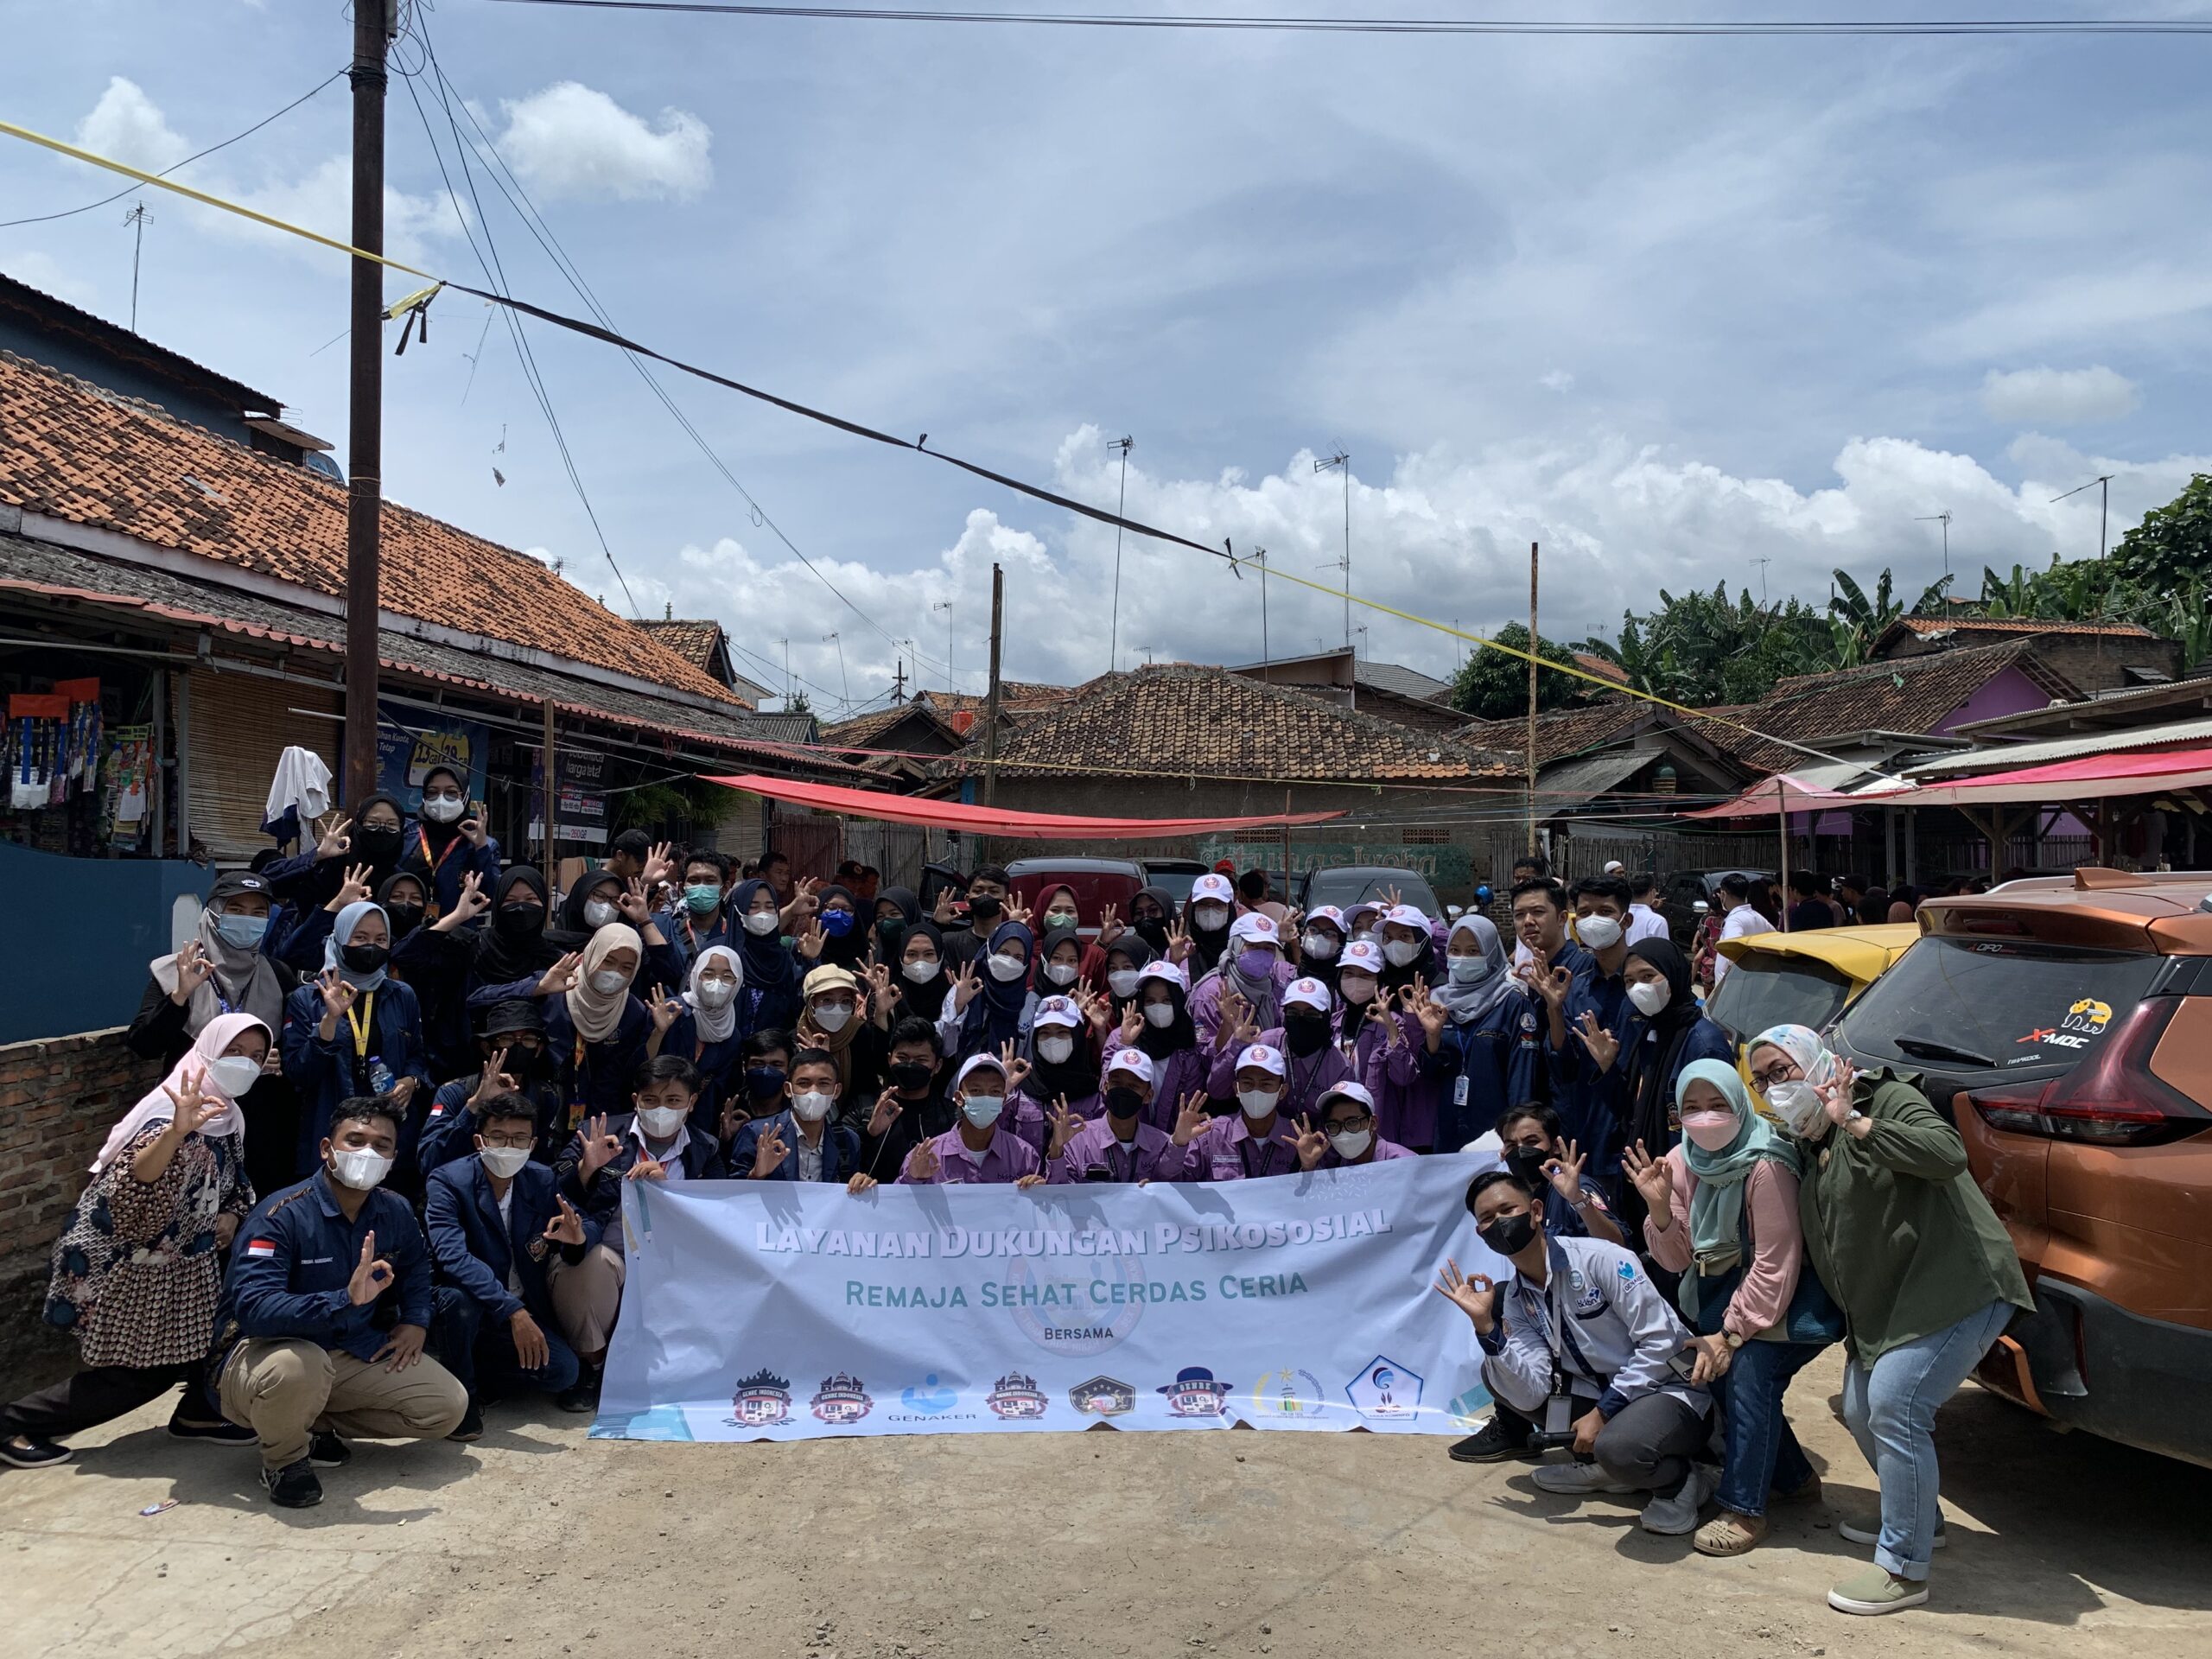 GENRE Se-Banten Berikan Layanan Dukungan Psikososial Serta kegiatan amal untuk Anak-anak Penyintas Banjir Banten